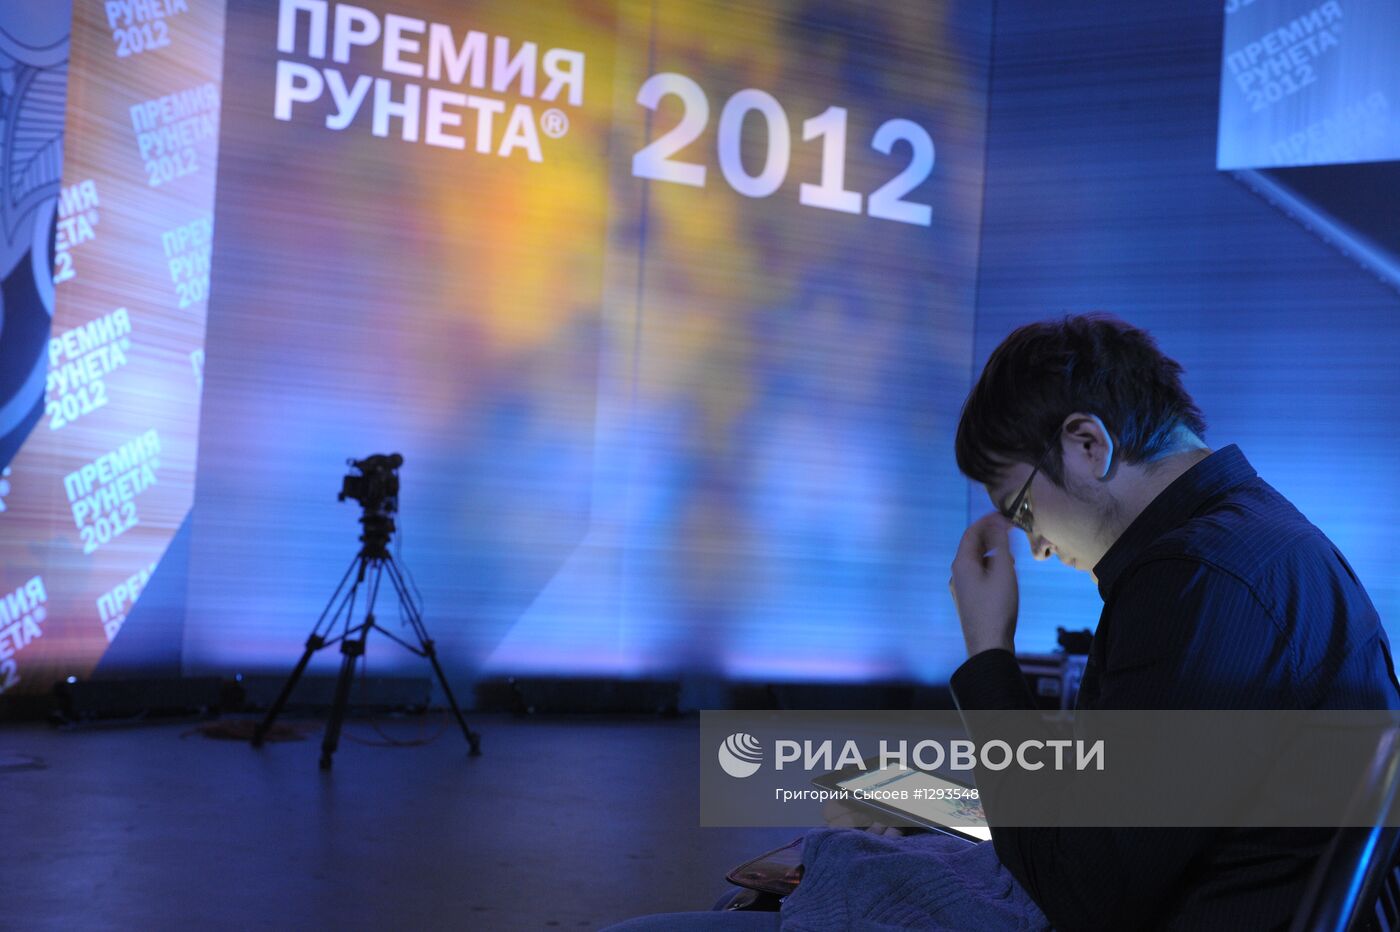 IX торжественная церемония вручения "Премии Рунета 2012"